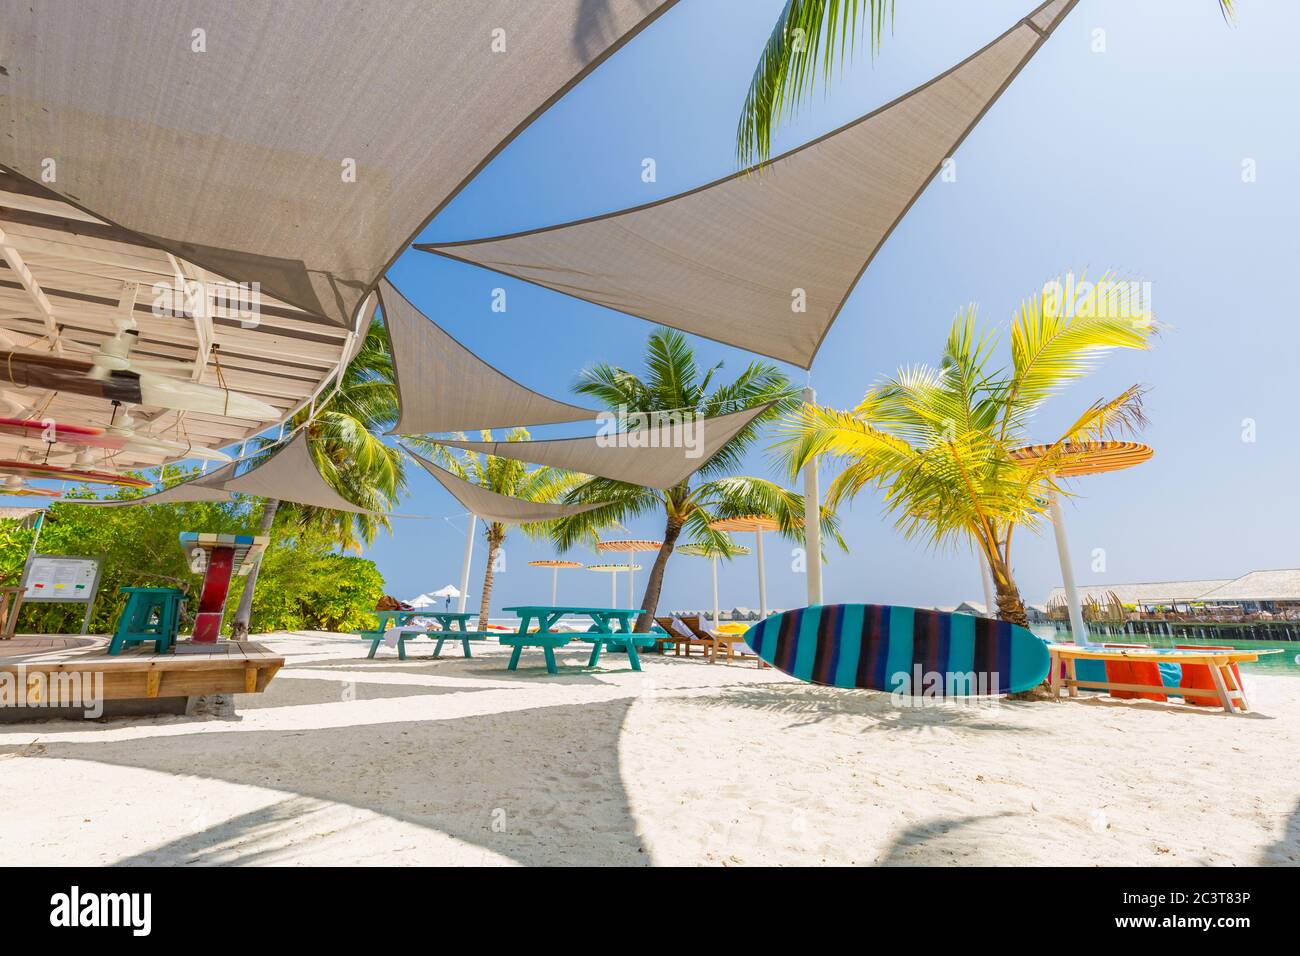 Lussuoso resort Beach bar sull'isola tropicale. Splendido bar in un bel resort sulla spiaggia con palme, sabbia bianca e oceano blu. Foto Stock